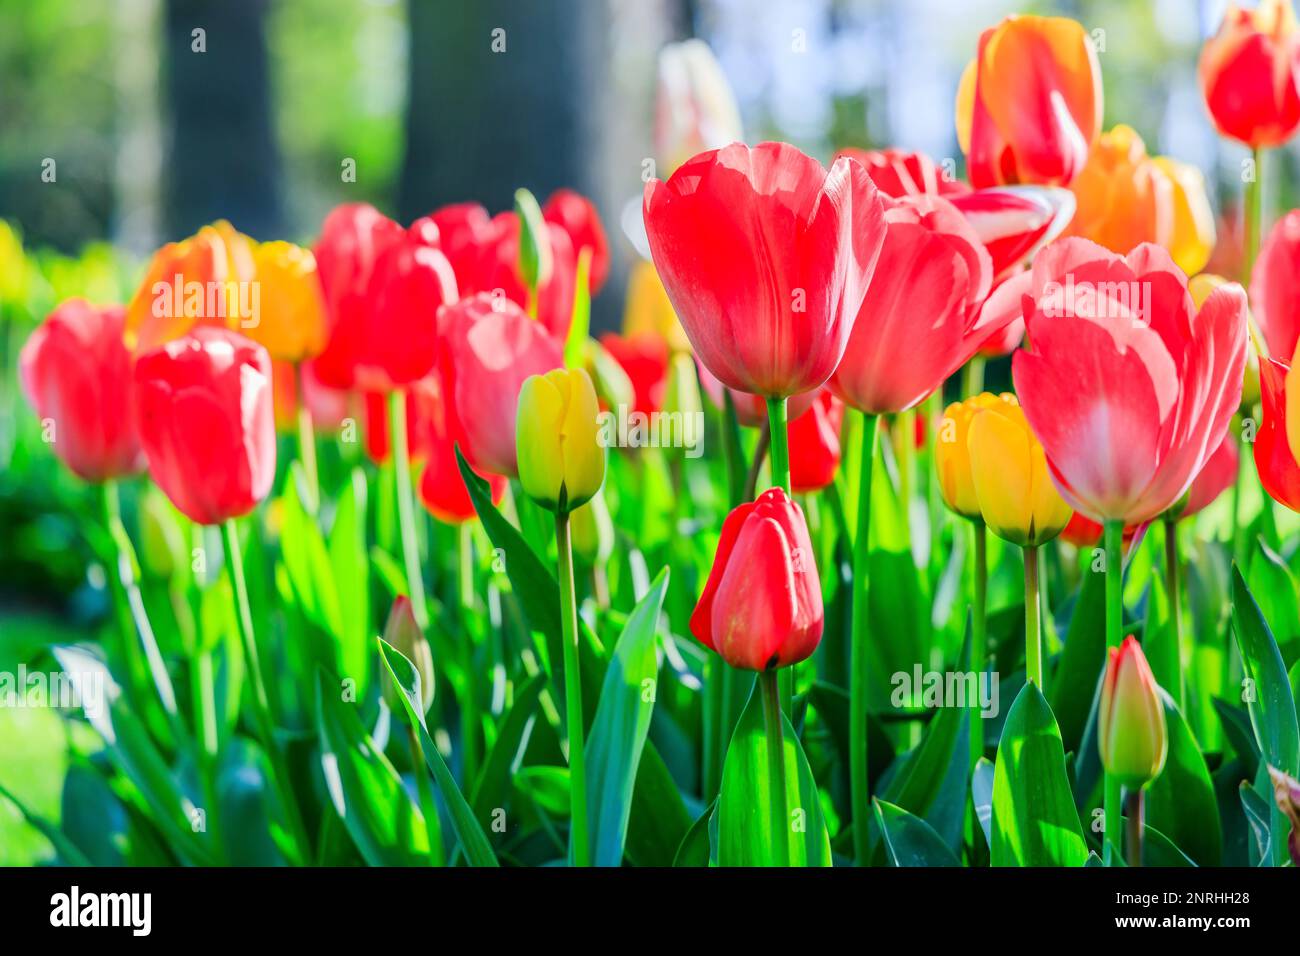 Tulipes colorées en fleurs dans le jardin public de fleurs. Lisse, Hollande, pays-Bas. Banque D'Images